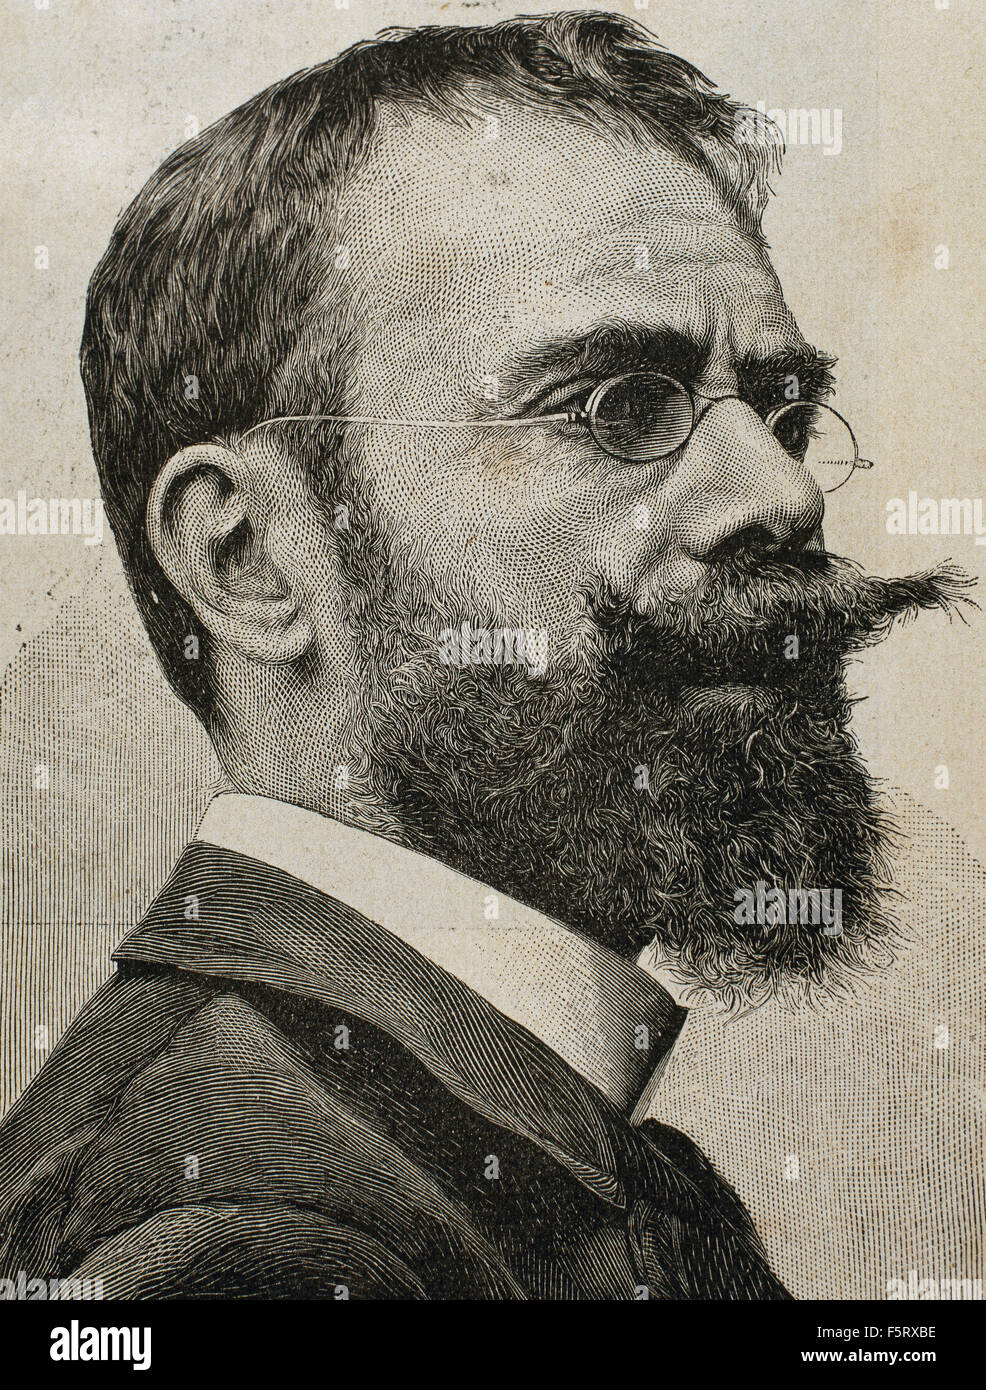 Francisco Pradilla Ortiz (1848-1921). Peintre espagnol. Portrait. Gravure, 19ème siècle. Banque D'Images